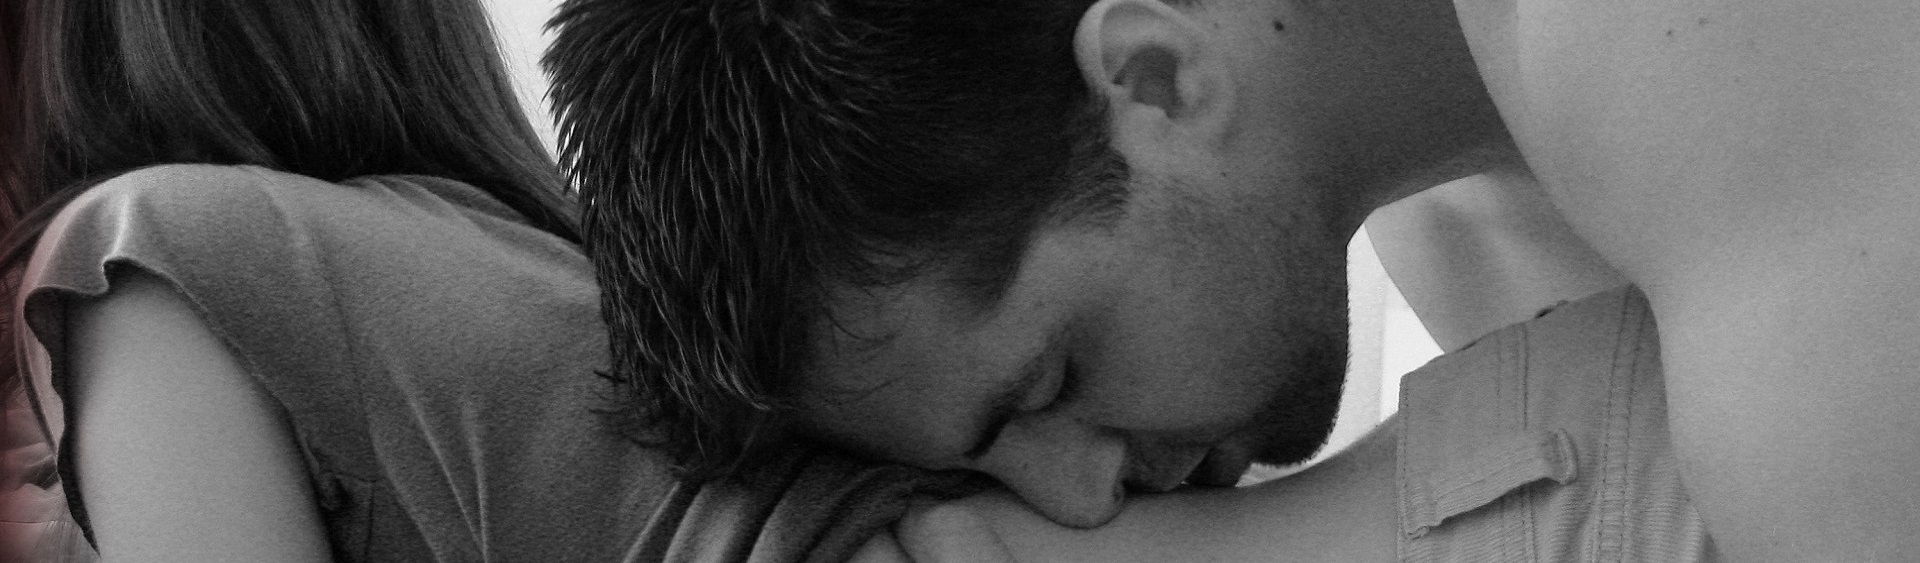 парень целует в живот и грудь фото 91